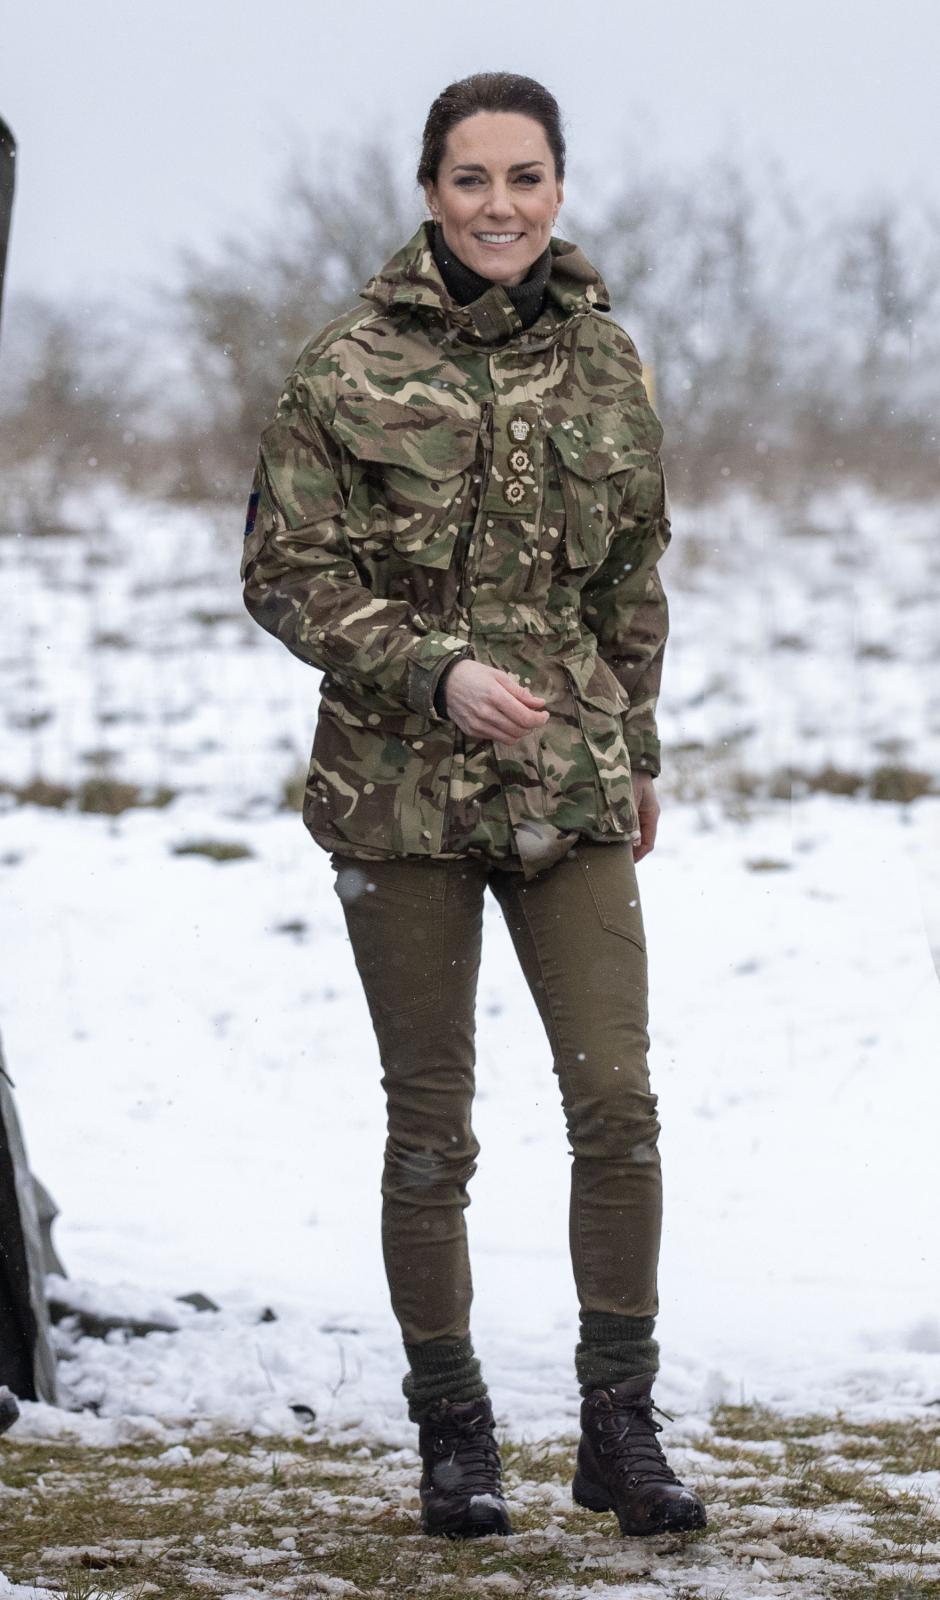 Kate Middleton no dudó en lucir su atuendo más militar para la ocasión, unos pantalones verdes, con un chaquetón de camuflaje y unas botas técnicas de montaña con cordones, la princesa de Gales se enfrentó a la nieve. En la publicación de Instagram hacía referencia a que había sido fantástico poder estar con 'The Micks' viendo su trabajo duro (¡cualquiera que sea el clima!)